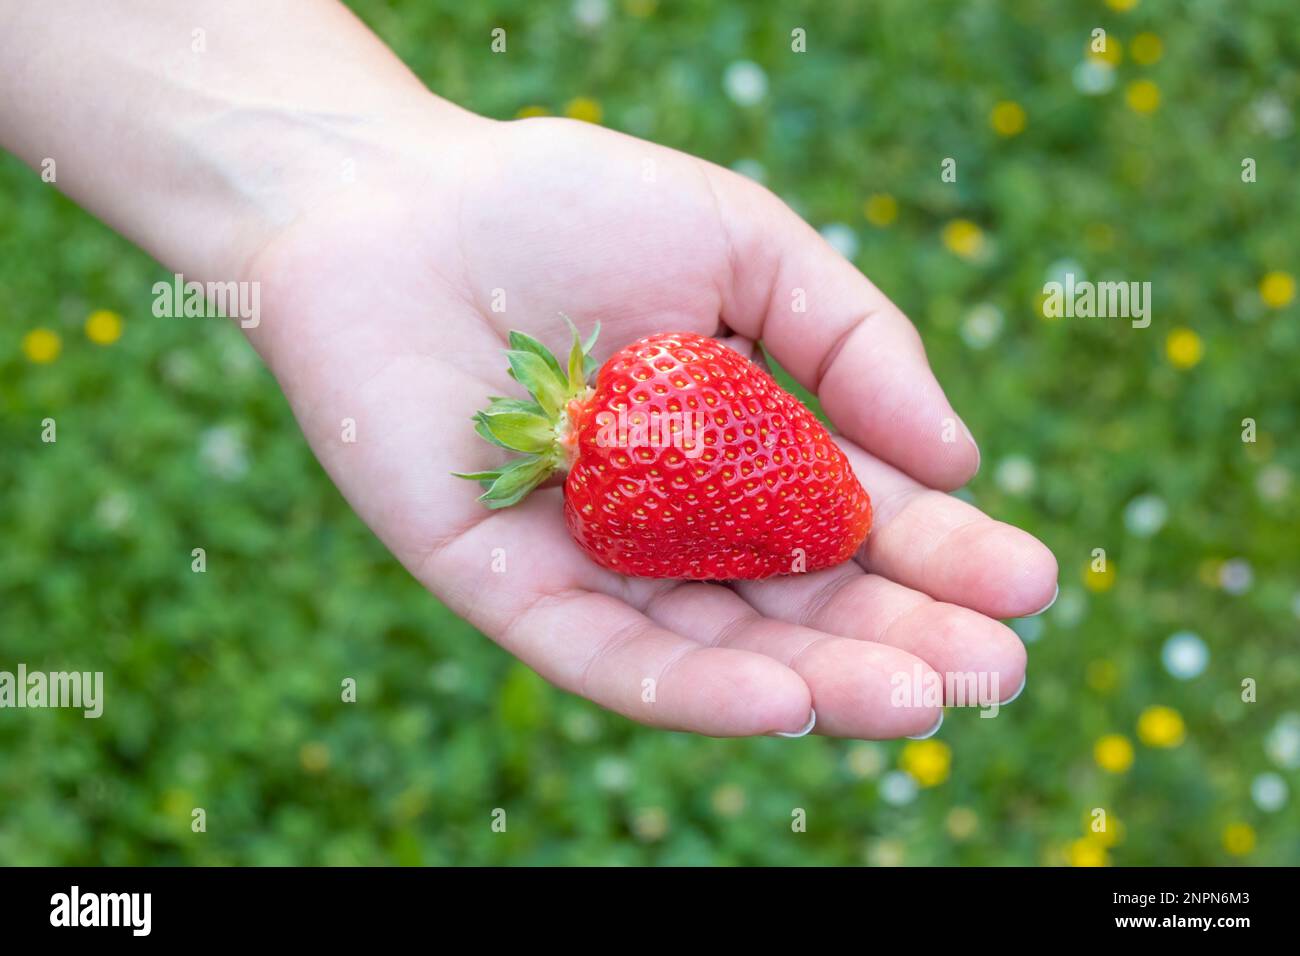 Grande fraise mûre fraîche sur la paume humaine. Une délicieuse récolte de fruits dans le jardin Banque D'Images